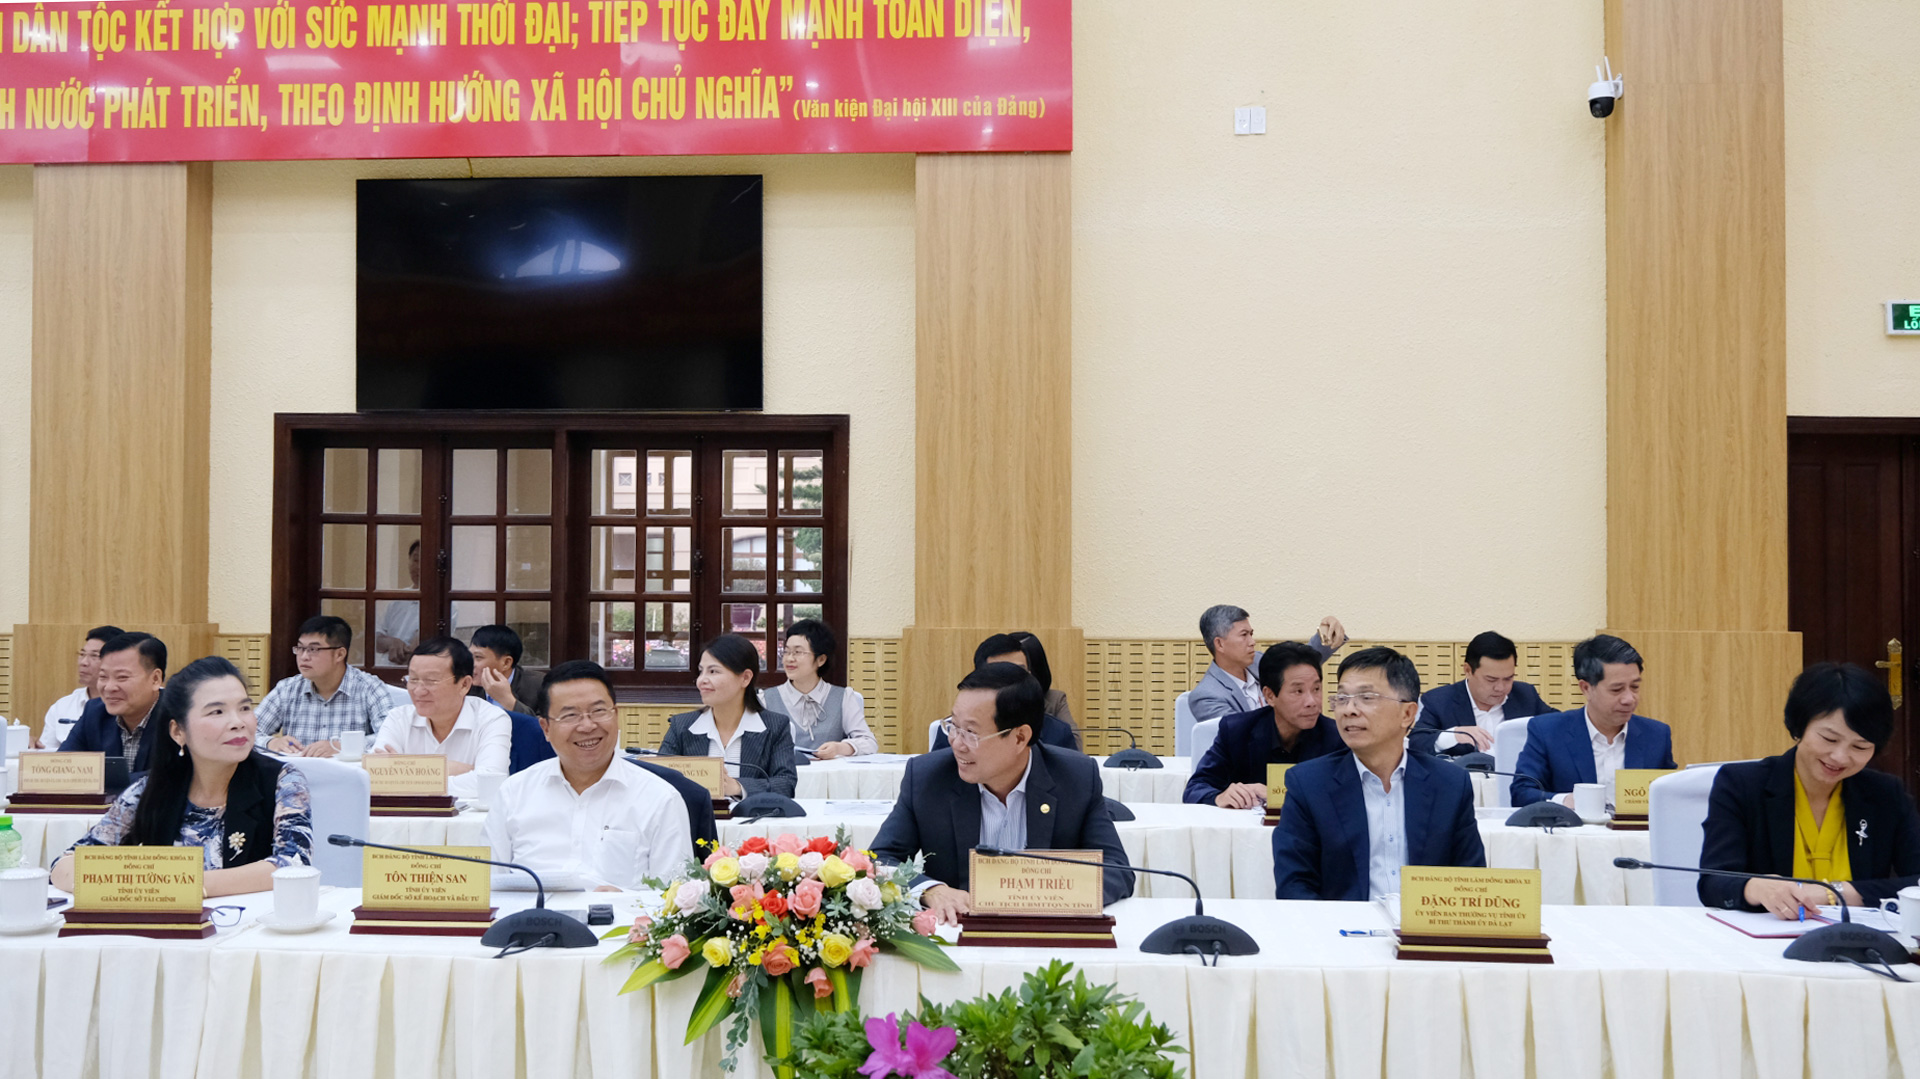 Các đại biểu tỉnh Lâm Đồng tham dự buổi làm việc